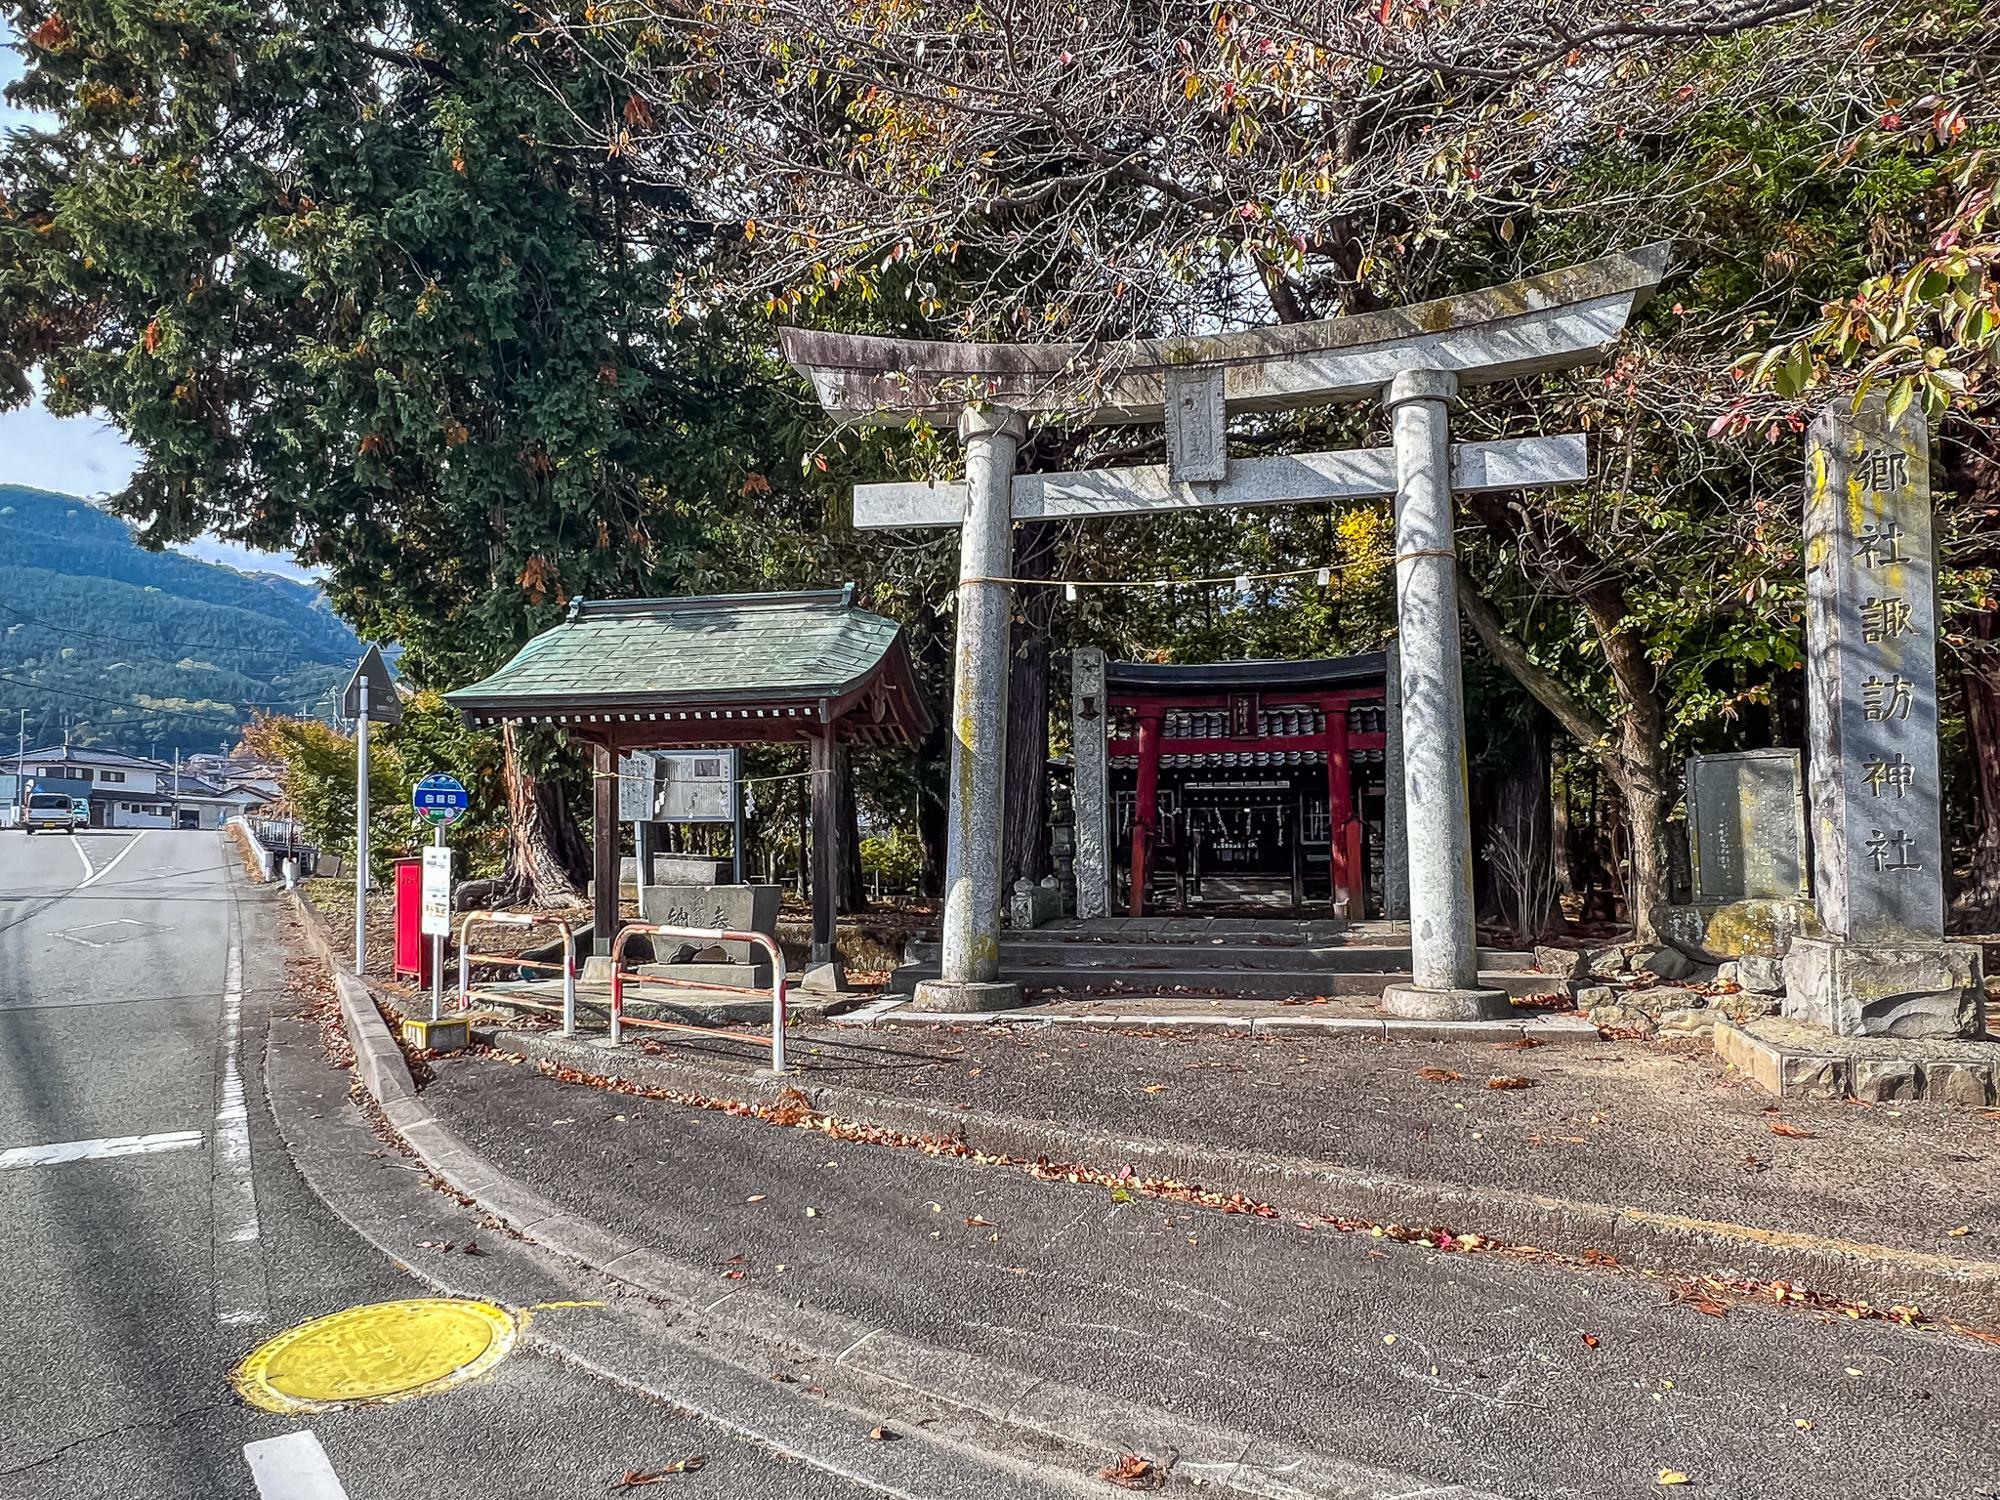 ツアーのスタートは曲輪田地区の諏訪神社から